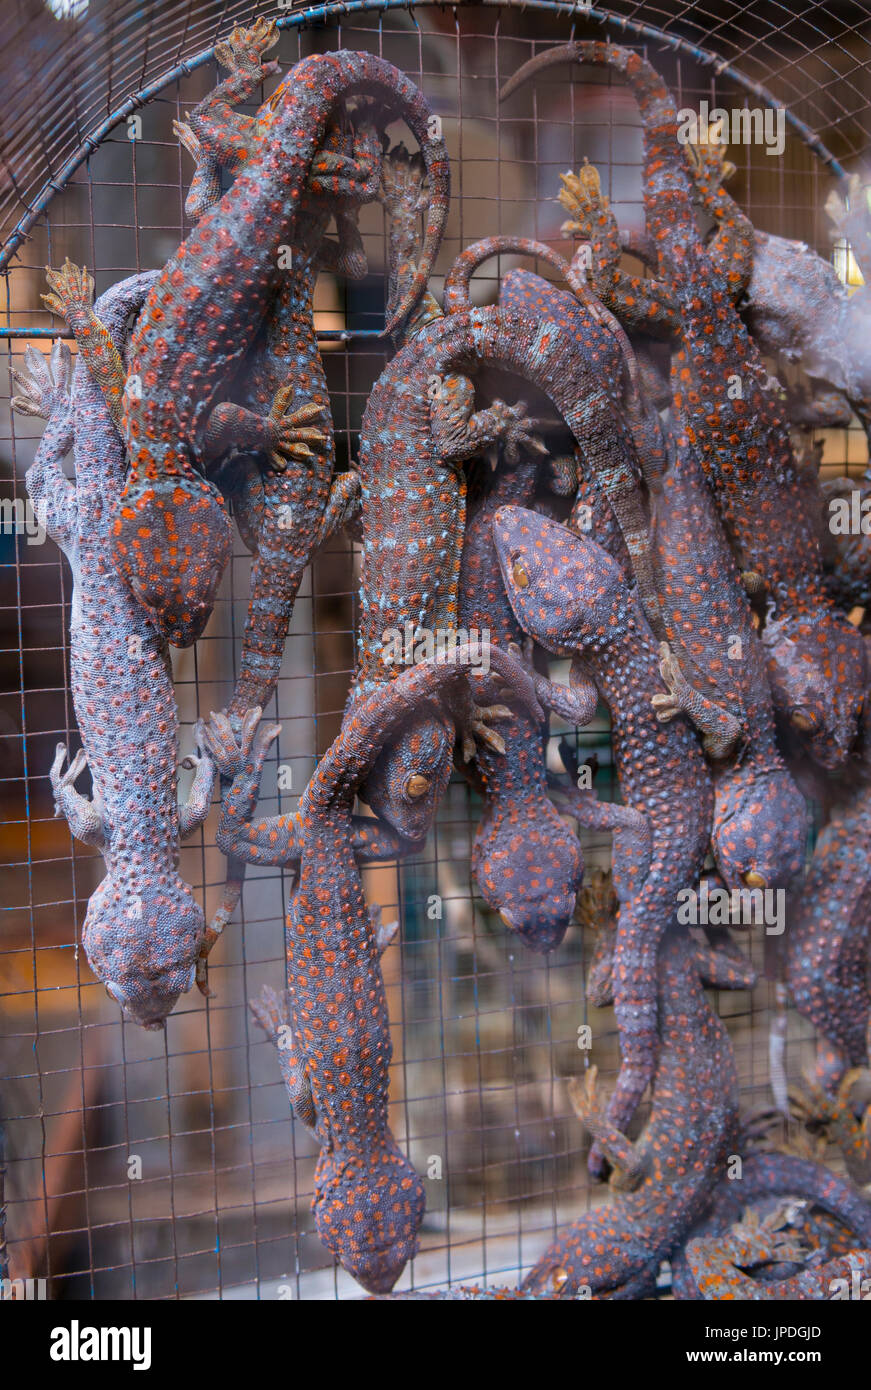 De nombreux geckos (Gekkonidae) d'une grande densité dans une étroite cage, marché aux oiseaux, Pasar Ngasem, Yogyakarta, Java, Indonésie Banque D'Images